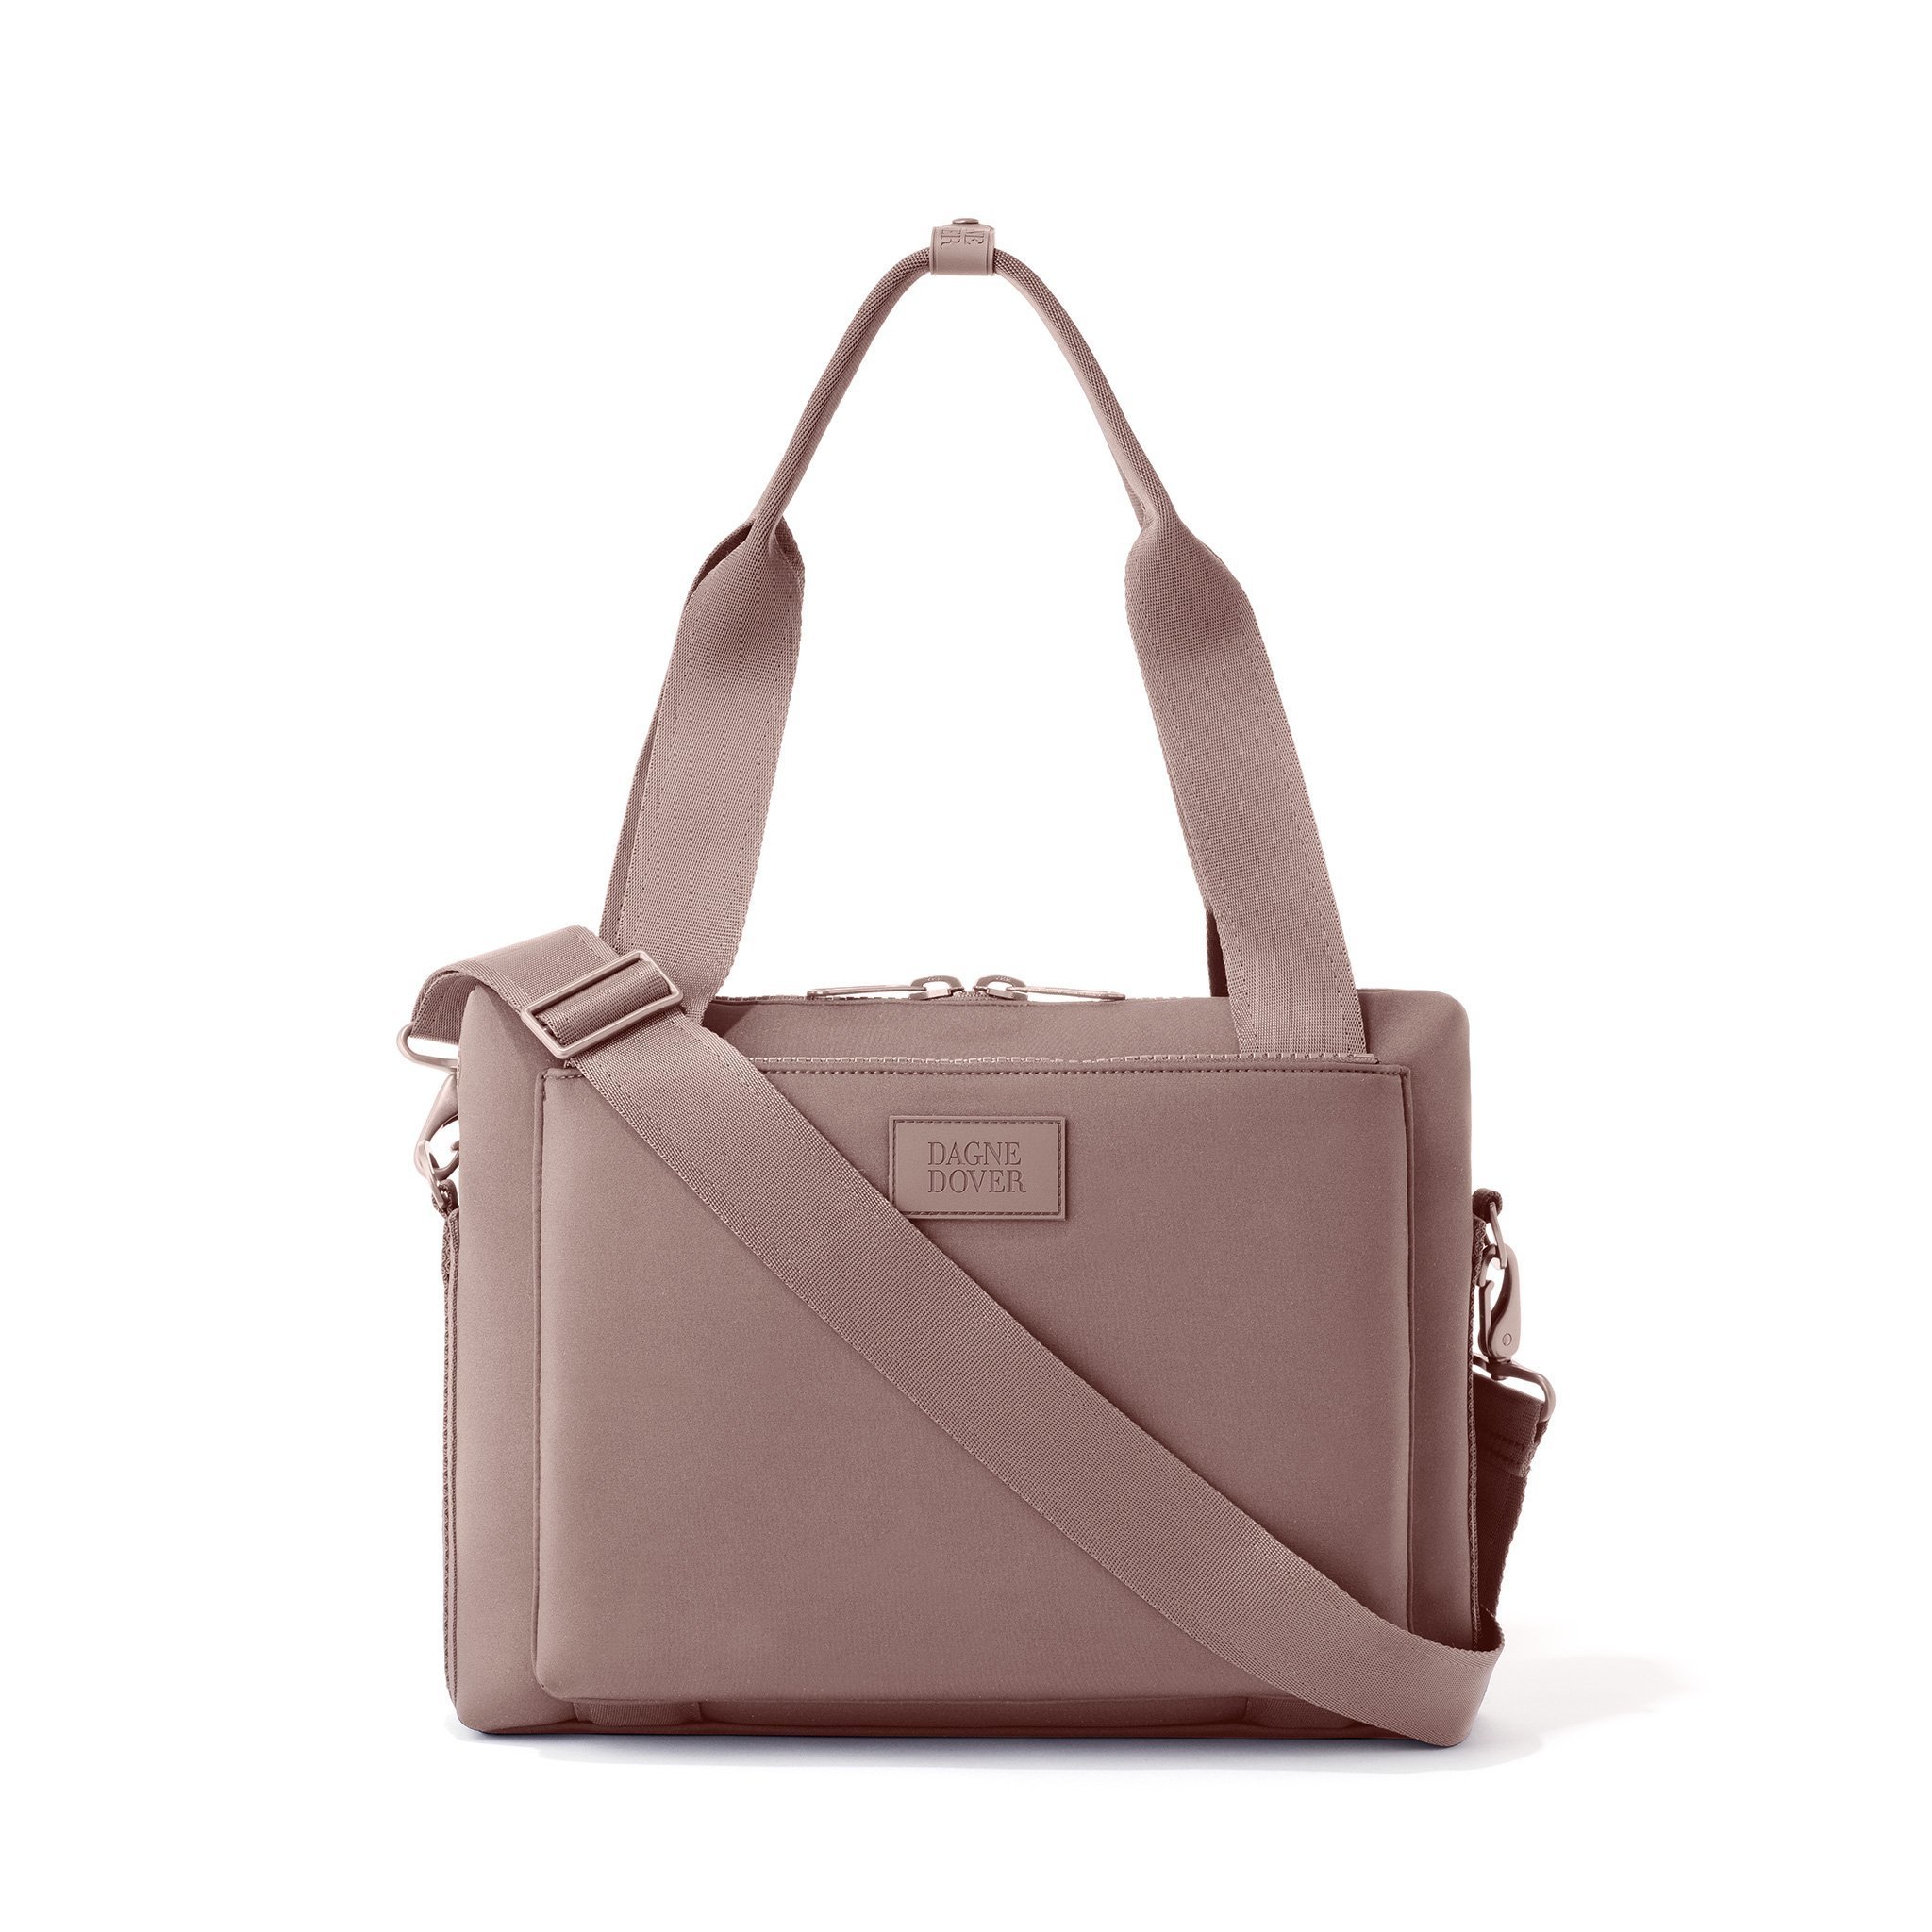 Backpack With Luggage Sleeve Sale Online, SAVE 55% - raptorunderlayment.com